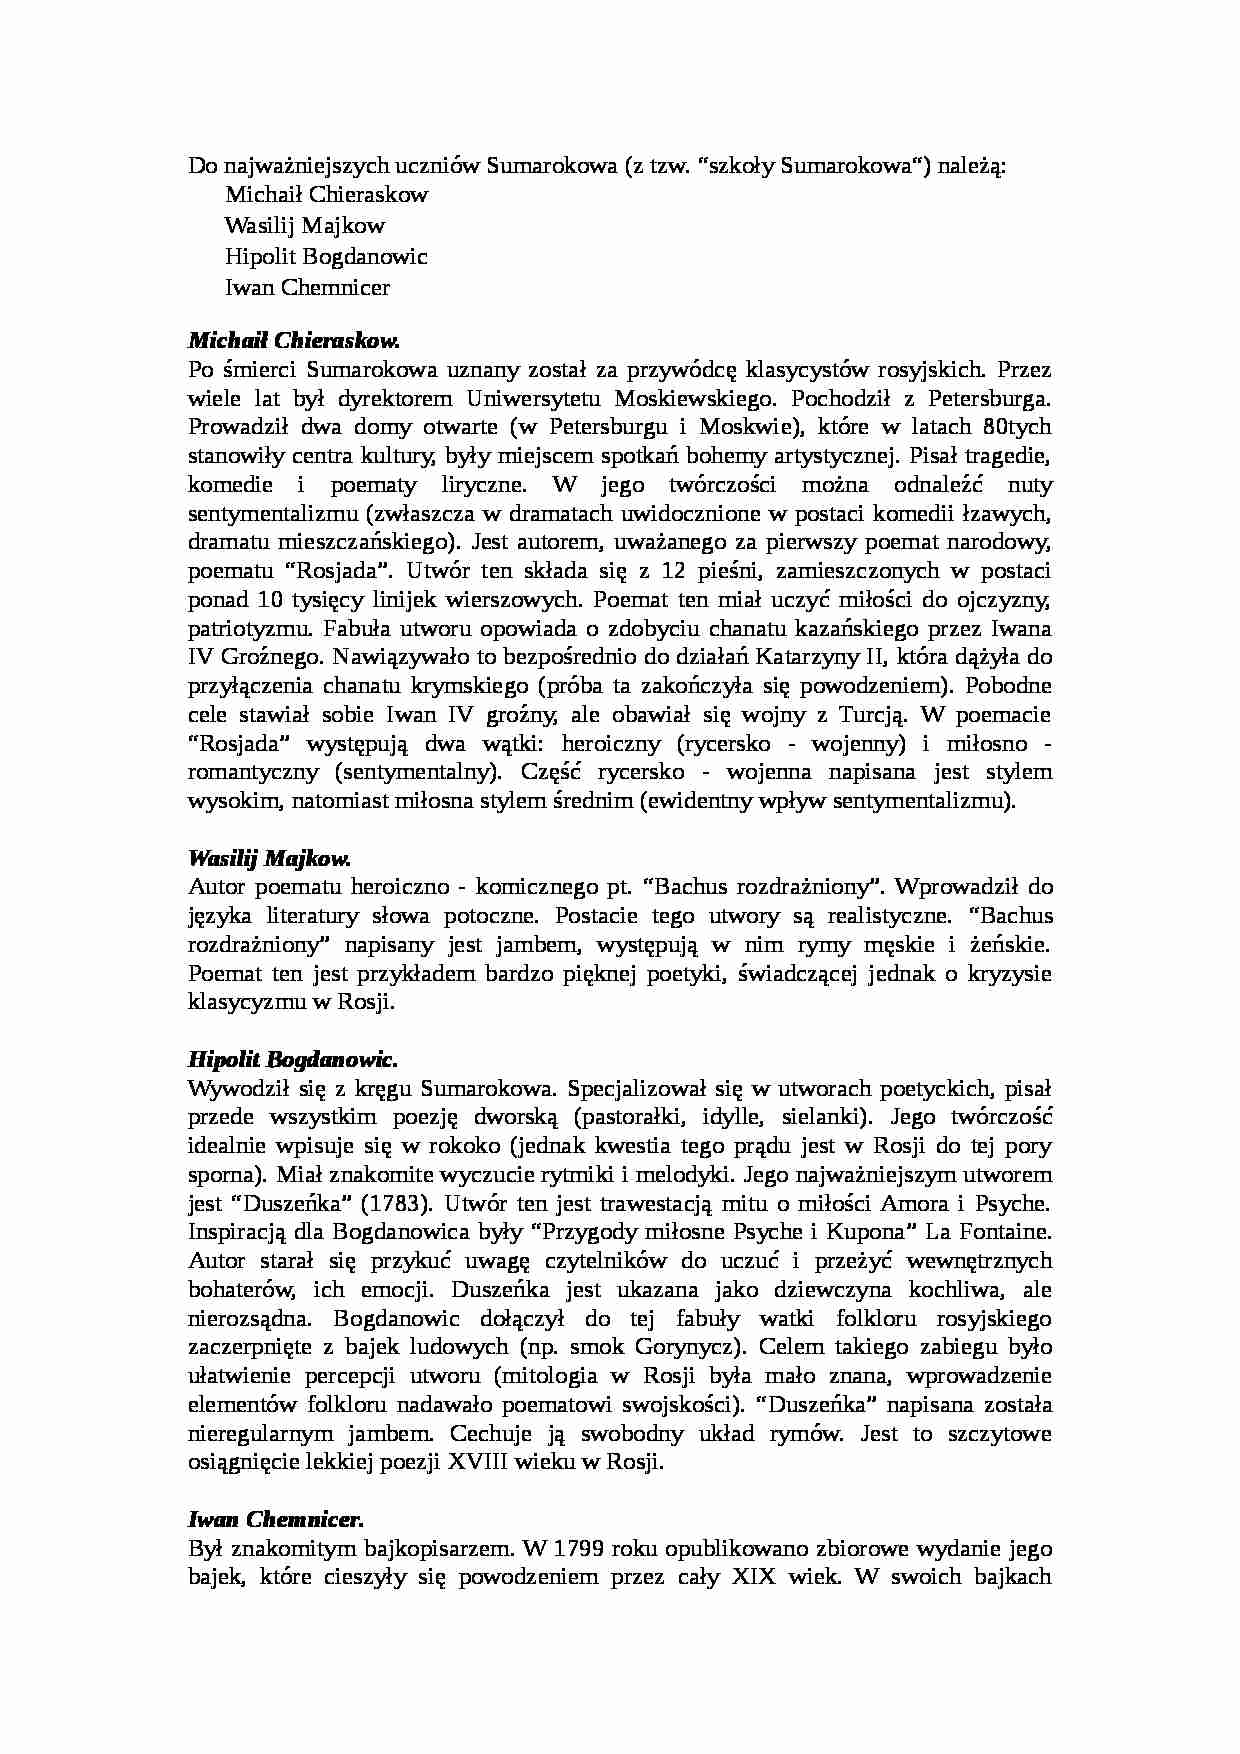 WYKŁAD Przedstwiciele szkoły Sumarokowa w literaturze rosyjskiej drugiej połowy XVIII wieku - strona 1